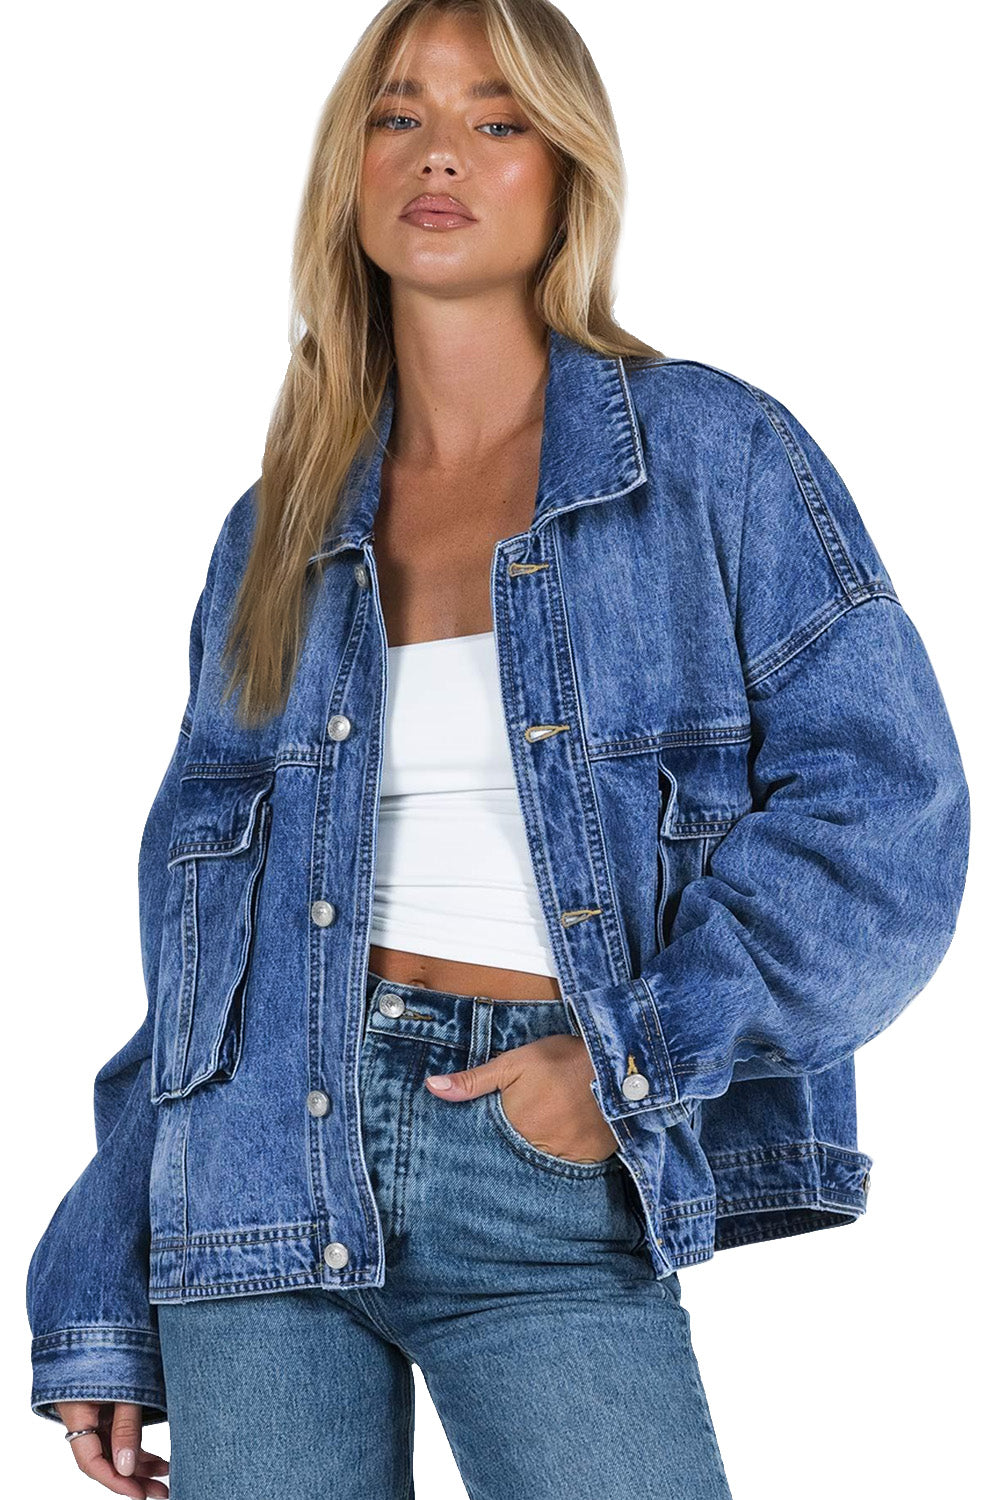 Modra ohlapna jakna iz džinsa s spuščenimi rameni na prsih